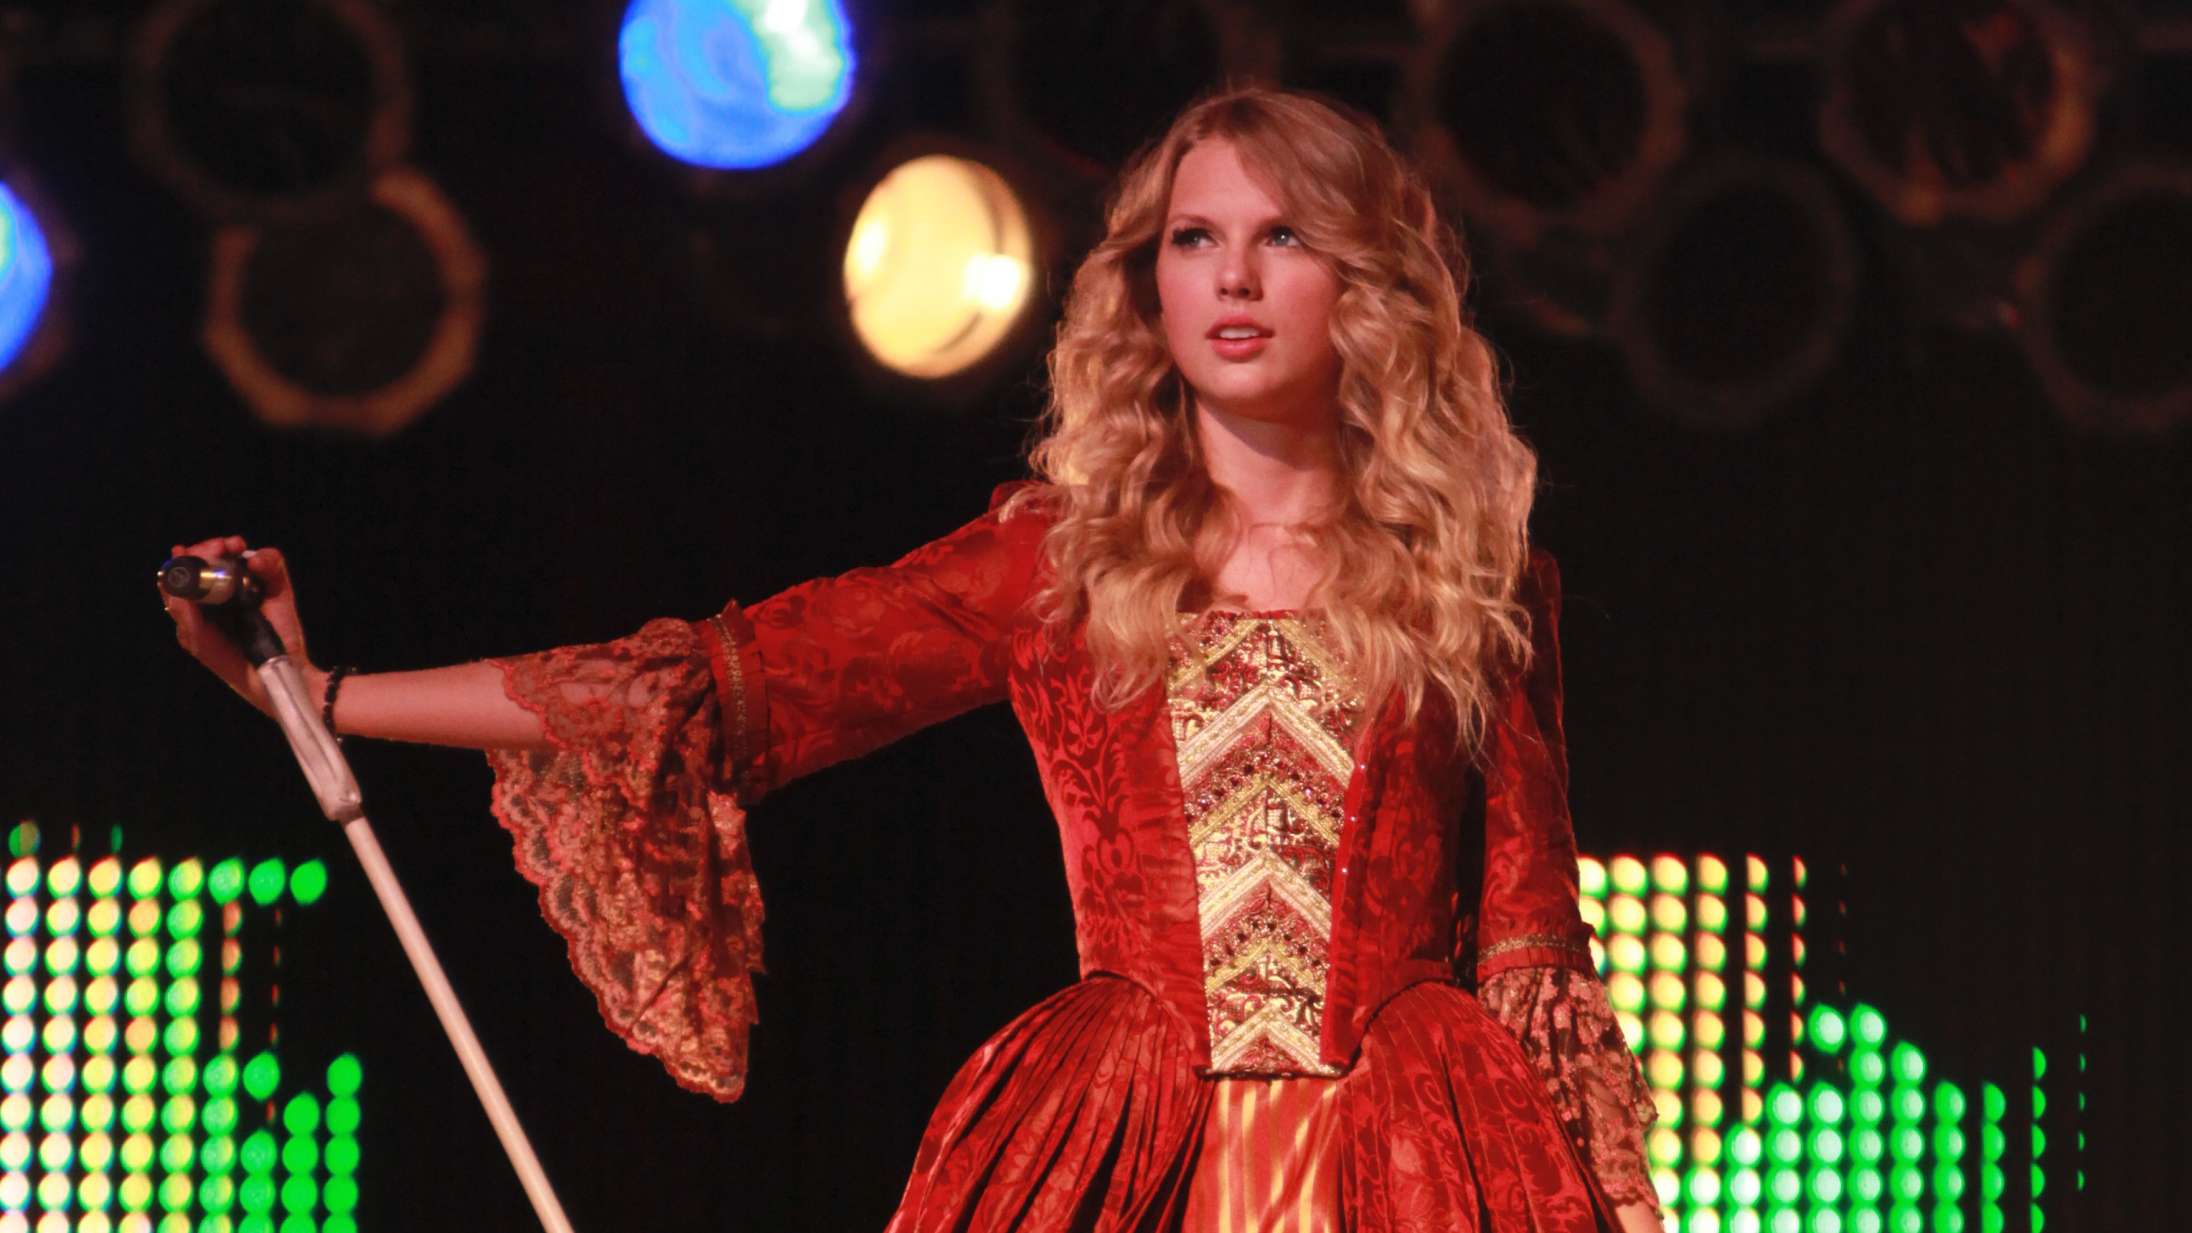 ‘Fearless’ genindspillet: En skeptiker tester tre fordomme om 19-årige Taylor Swifts gennembrudsalbum